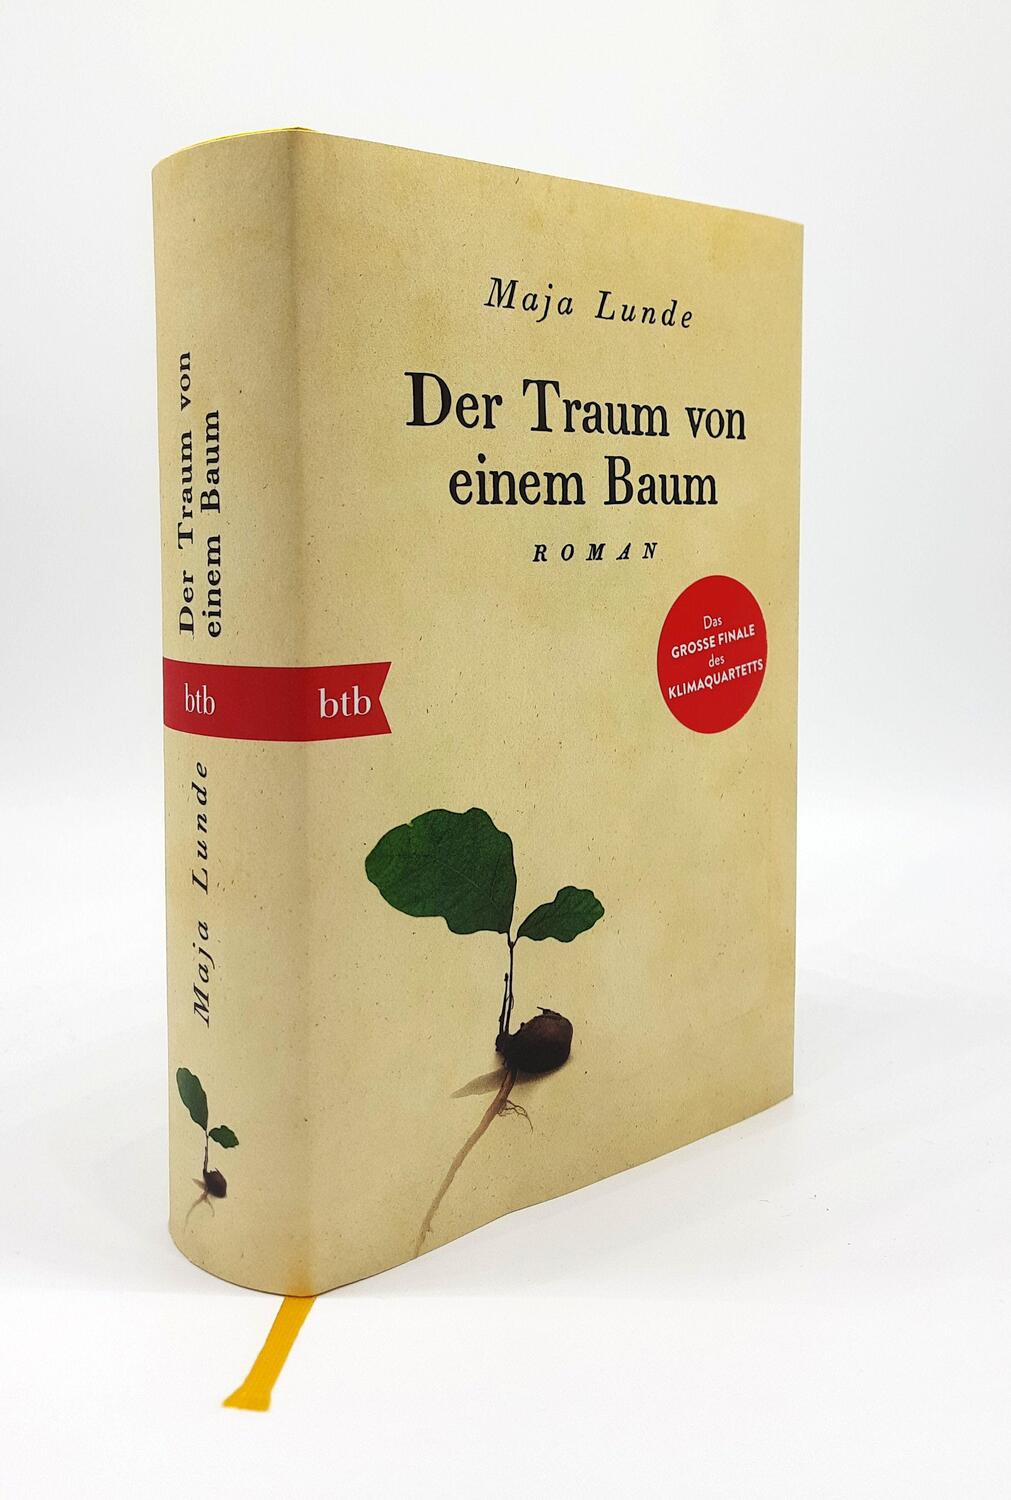 Bild: 9783442757916 | Der Traum von einem Baum | Roman | Maja Lunde | Buch | Klima Quartett